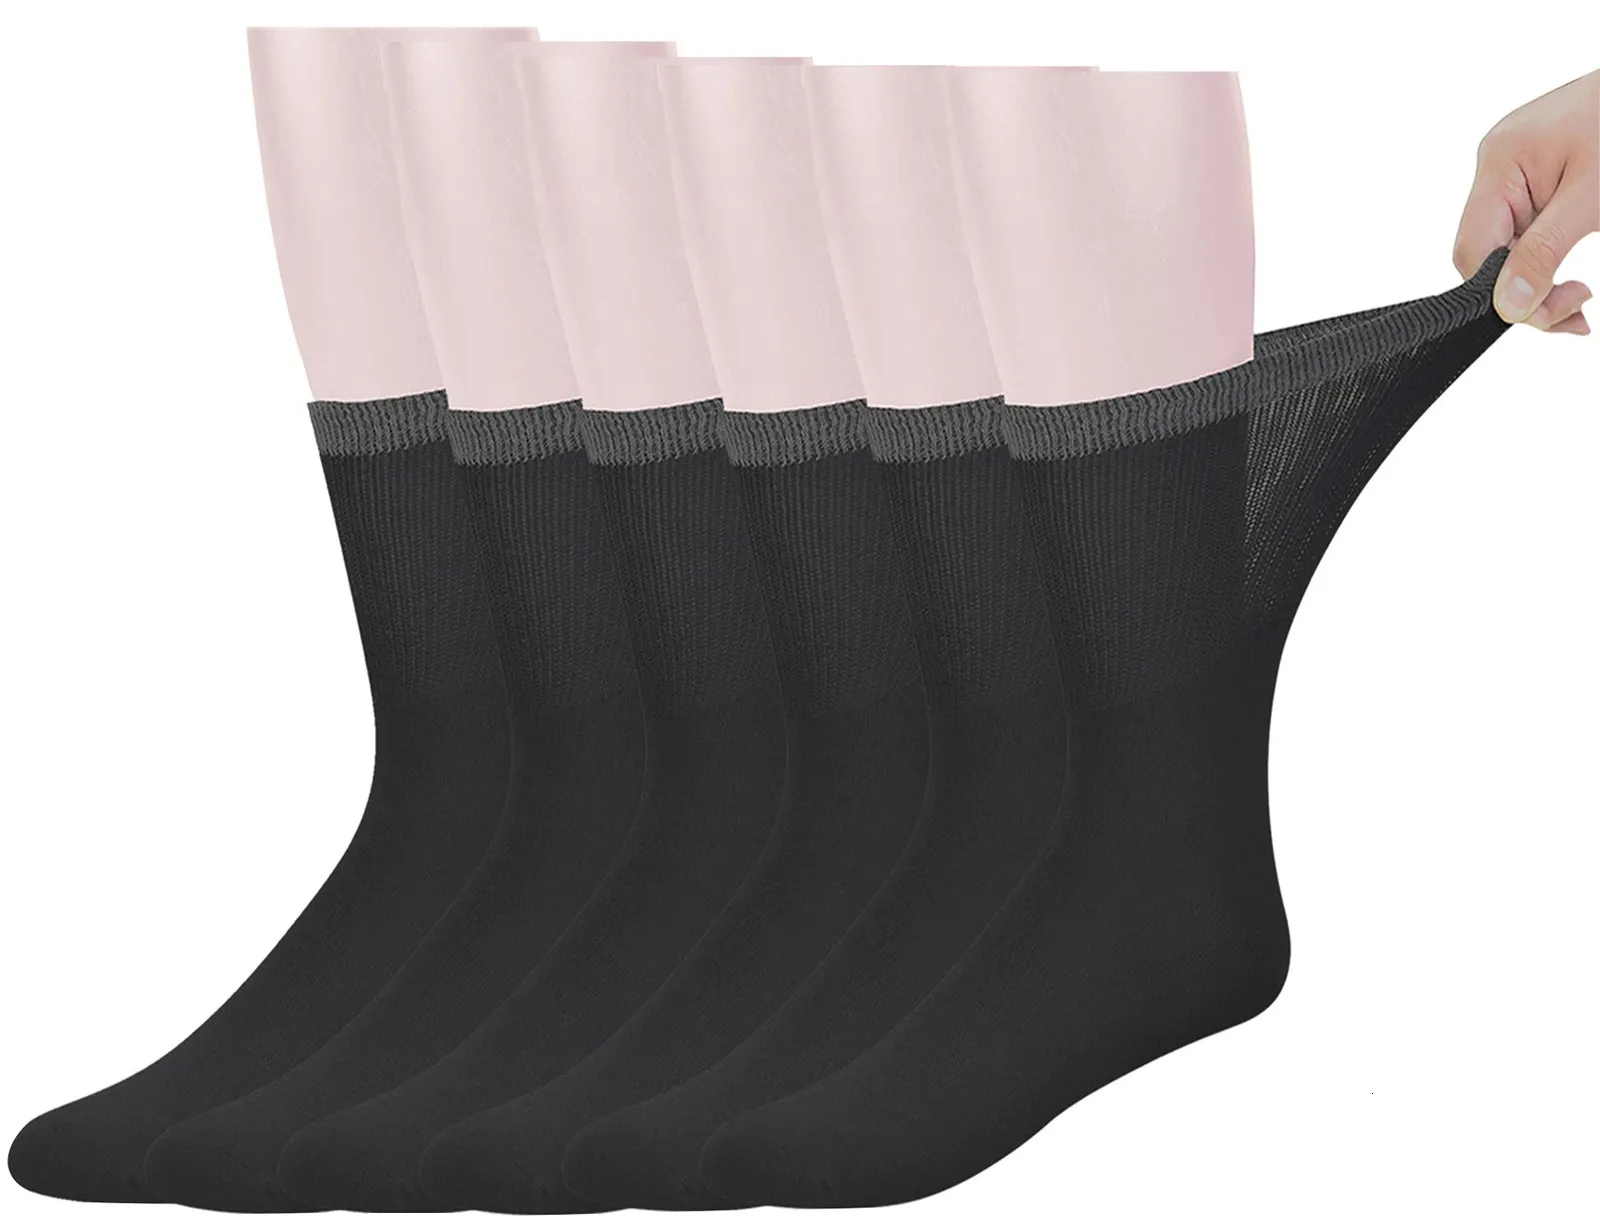 Мужские бамбуковые носки для диабетиков до середины икры с бесшовным носком, 6 пар, размер L, размер носков 1013 240129